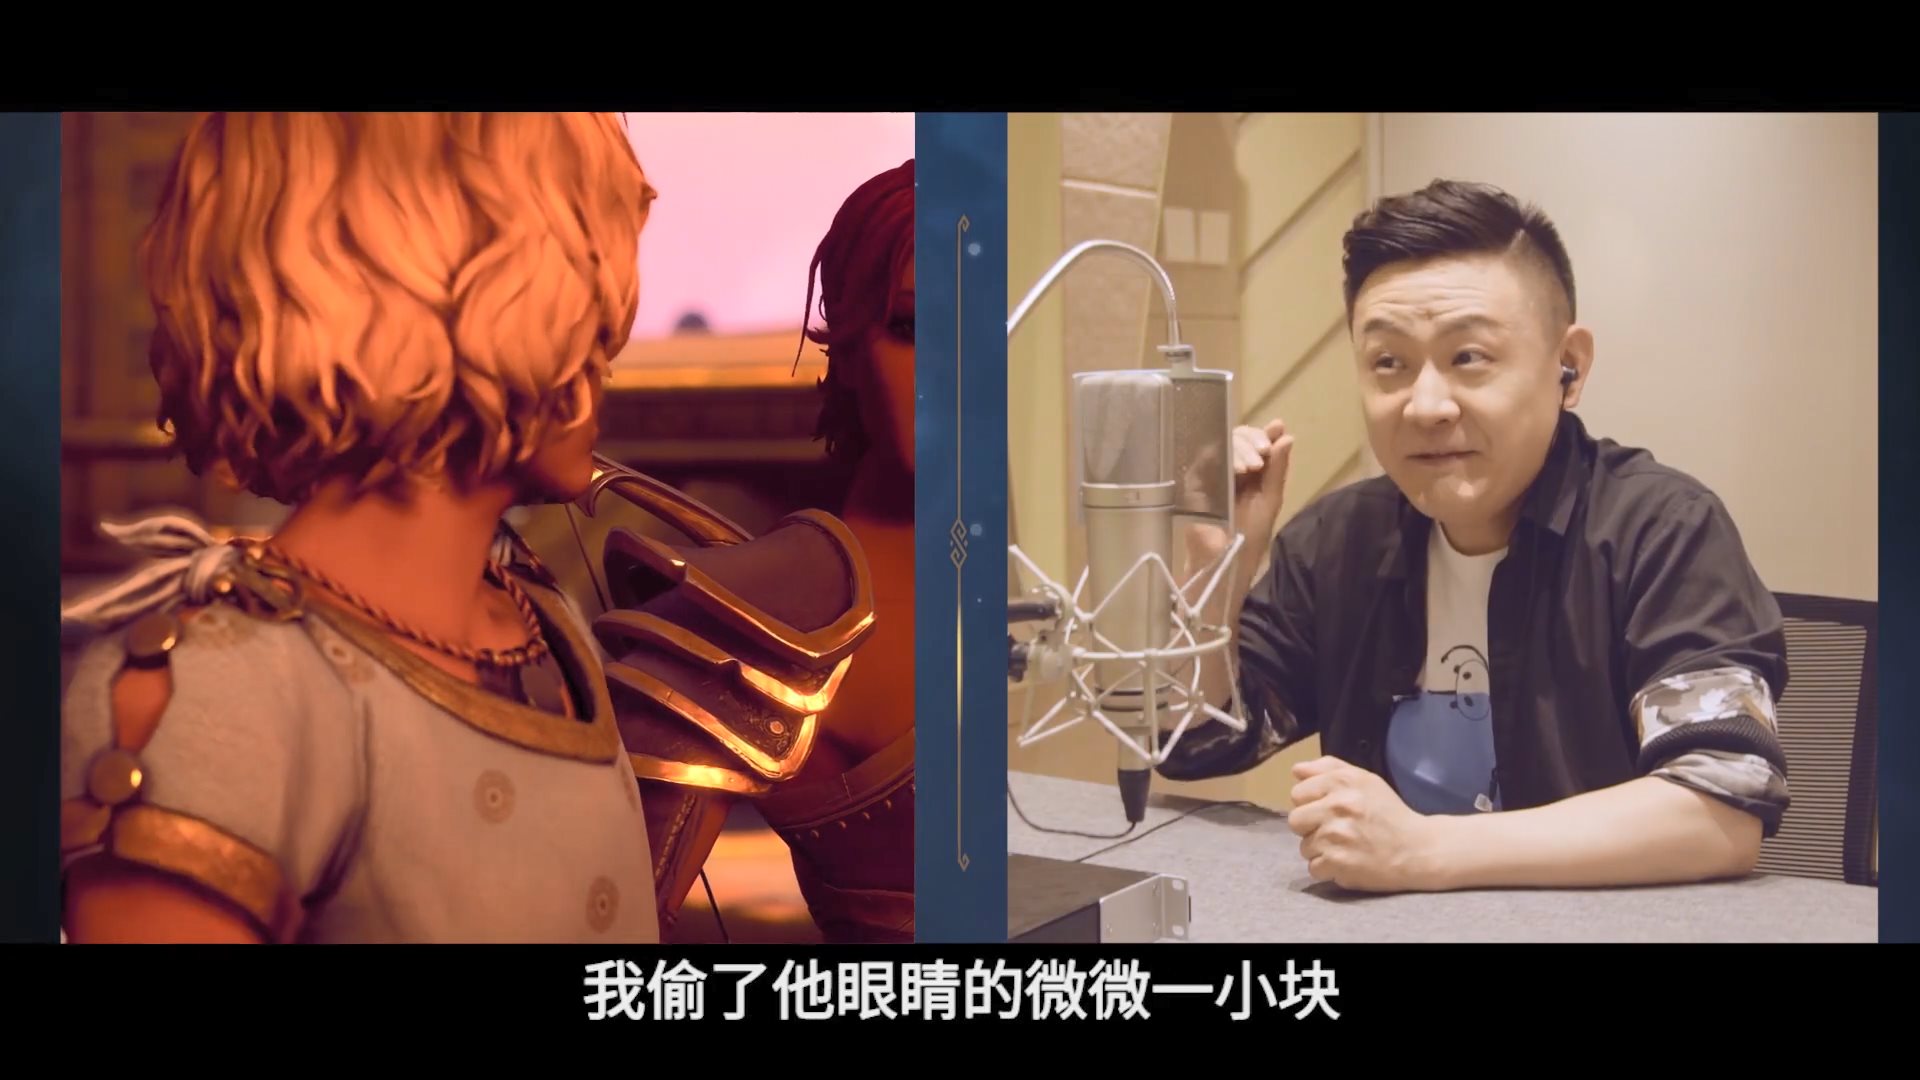 《渡神纪》中文配音幕后影像 提升中文玩家沉浸感